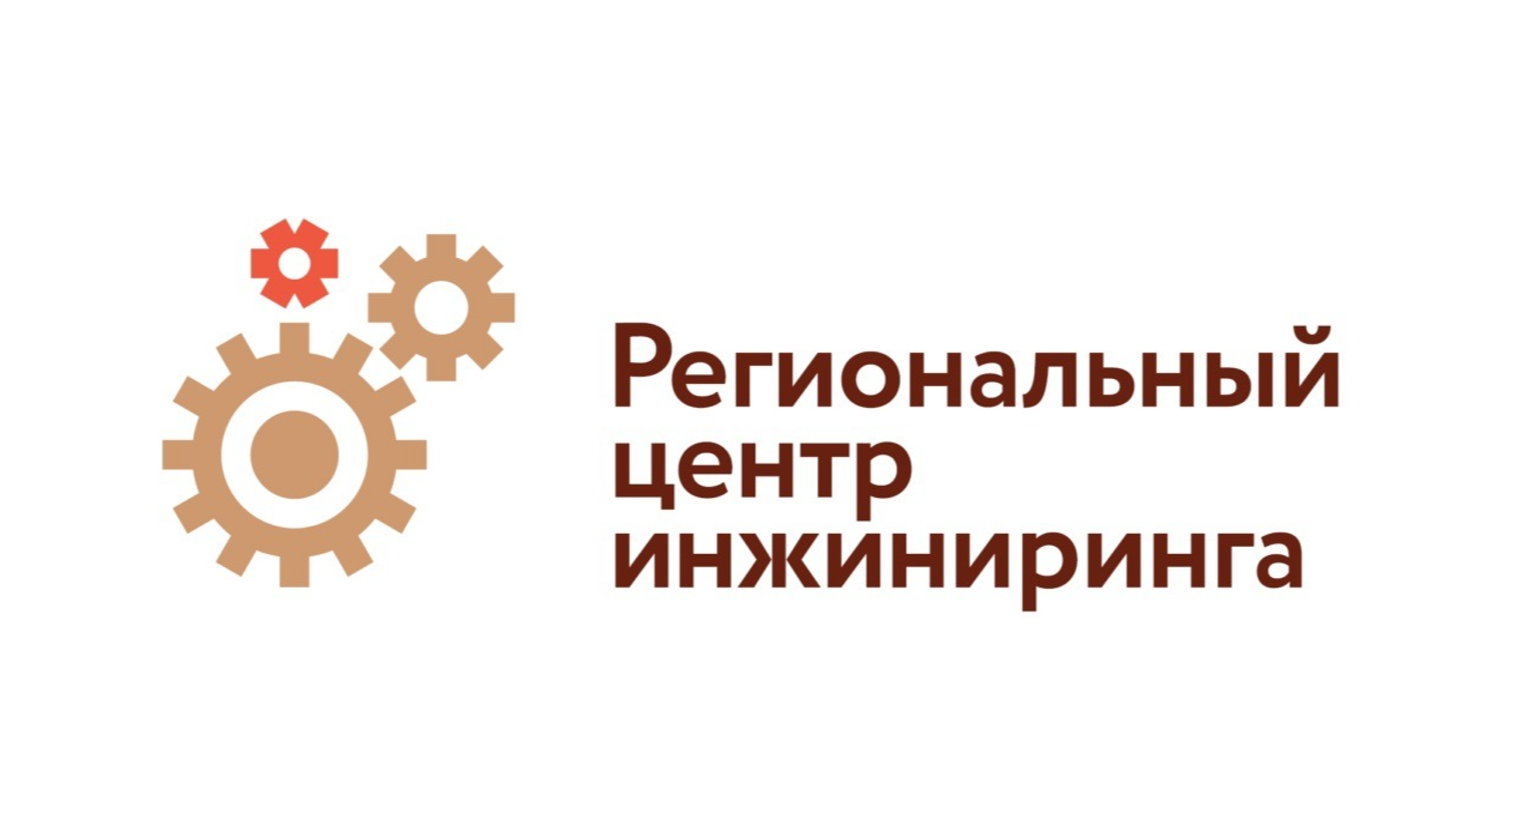 Региональный центр инжиниринга объявляет о приеме заявок СМСП производственного сектора на участие в программах инжиниринга